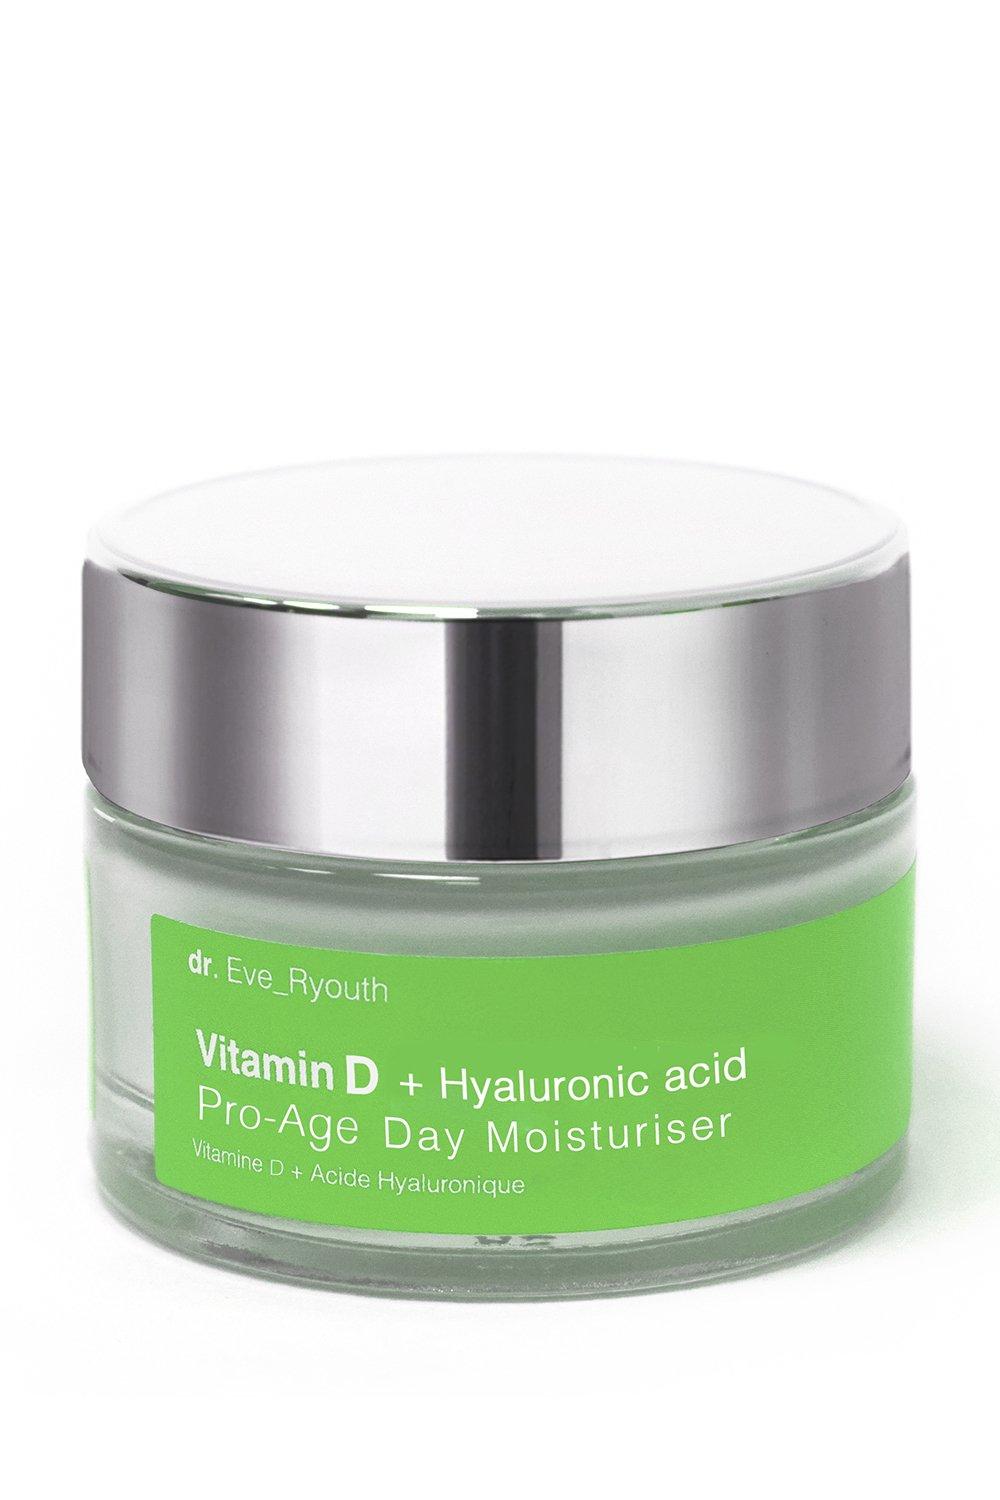 vitamin d + hyaluronic acid pro-age day moisturiser 50ml